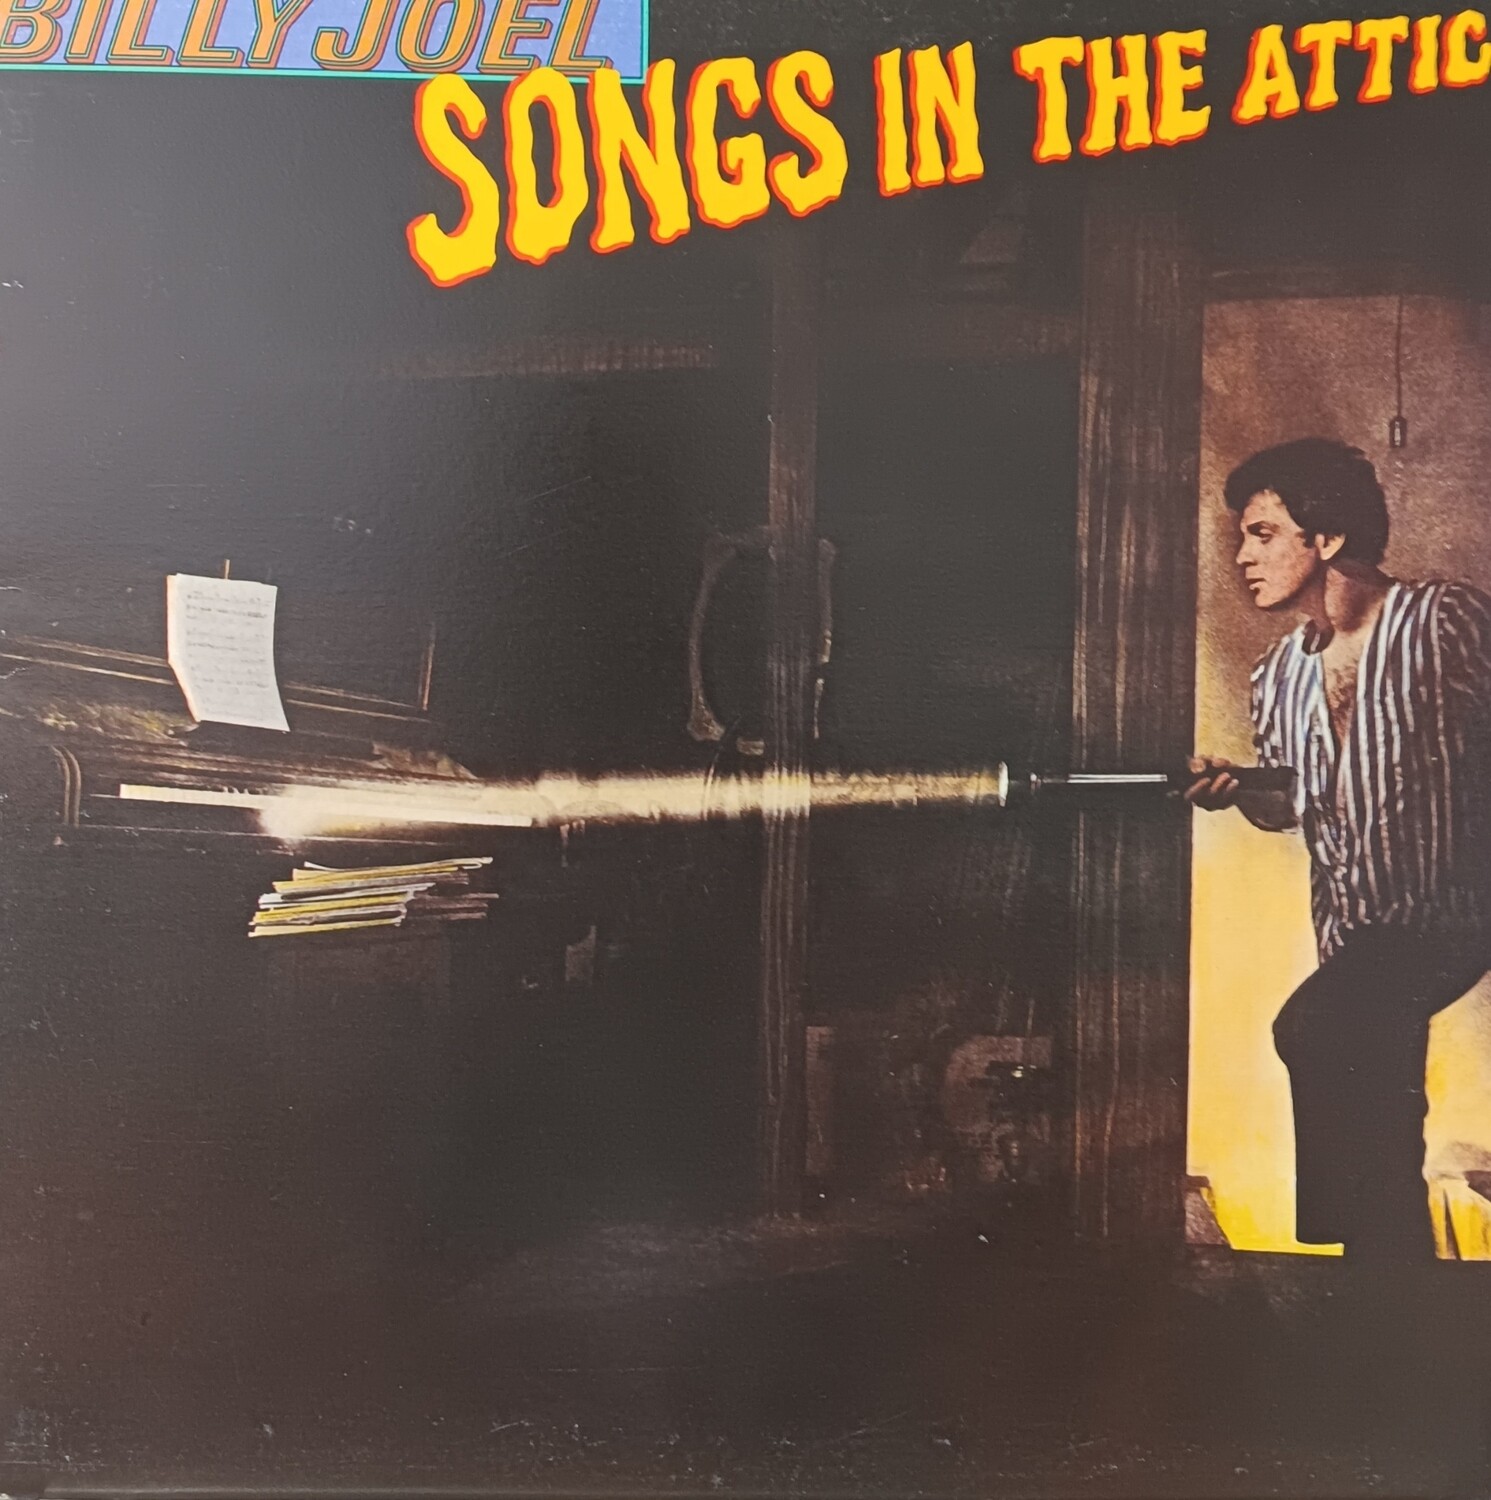 BILLY JOEL - Songs in the attic